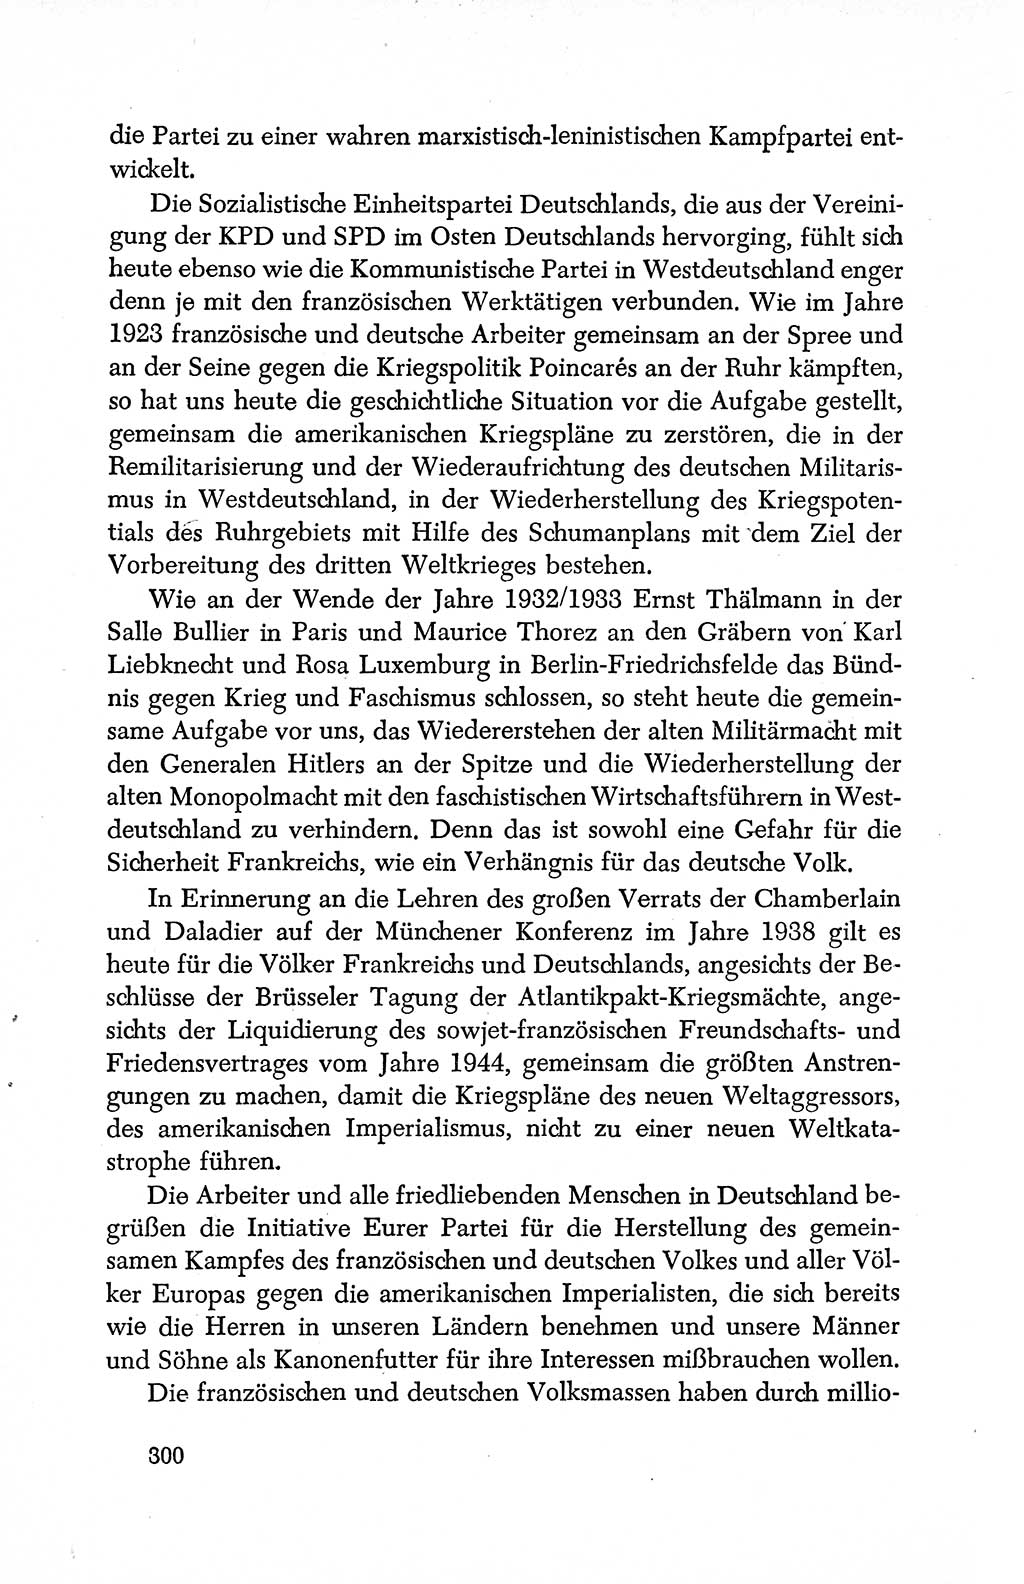 Dokumente der Sozialistischen Einheitspartei Deutschlands (SED) [Deutsche Demokratische Republik (DDR)] 1950-1952, Seite 300 (Dok. SED DDR 1950-1952, S. 300)